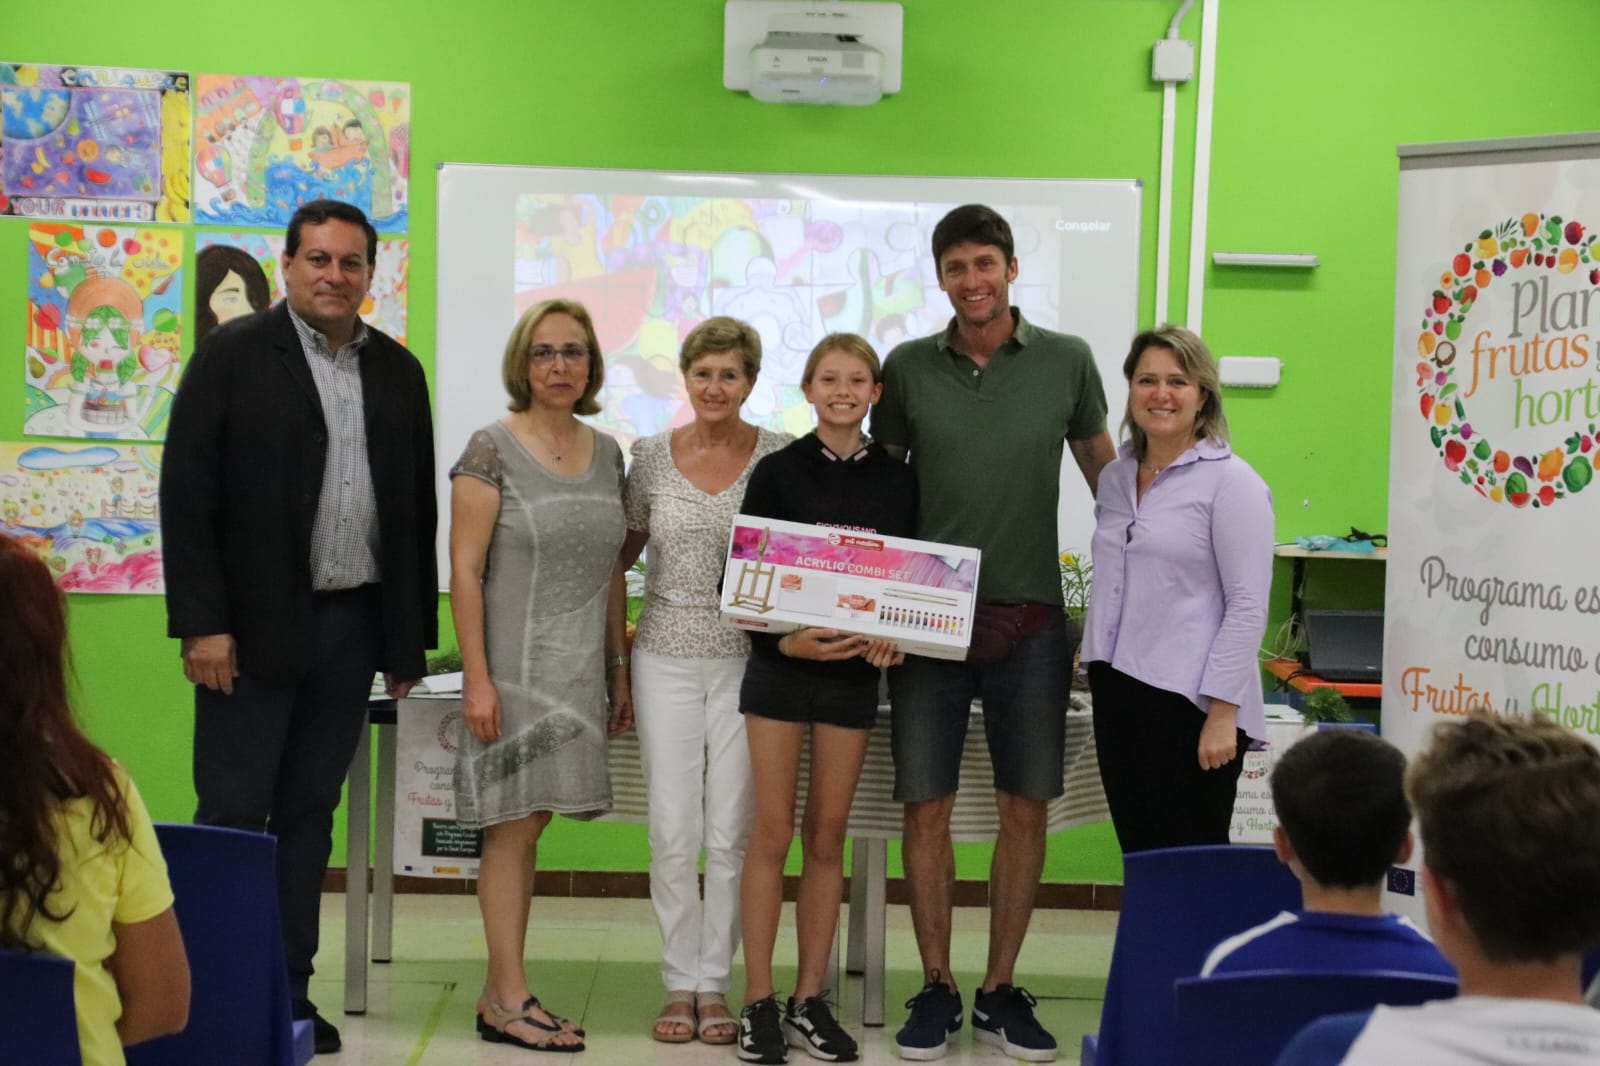 El Gobierno canario entrega el premio del Concurso Escolar del Cartel del Plan de Frutas y Hortalizas 2022-23